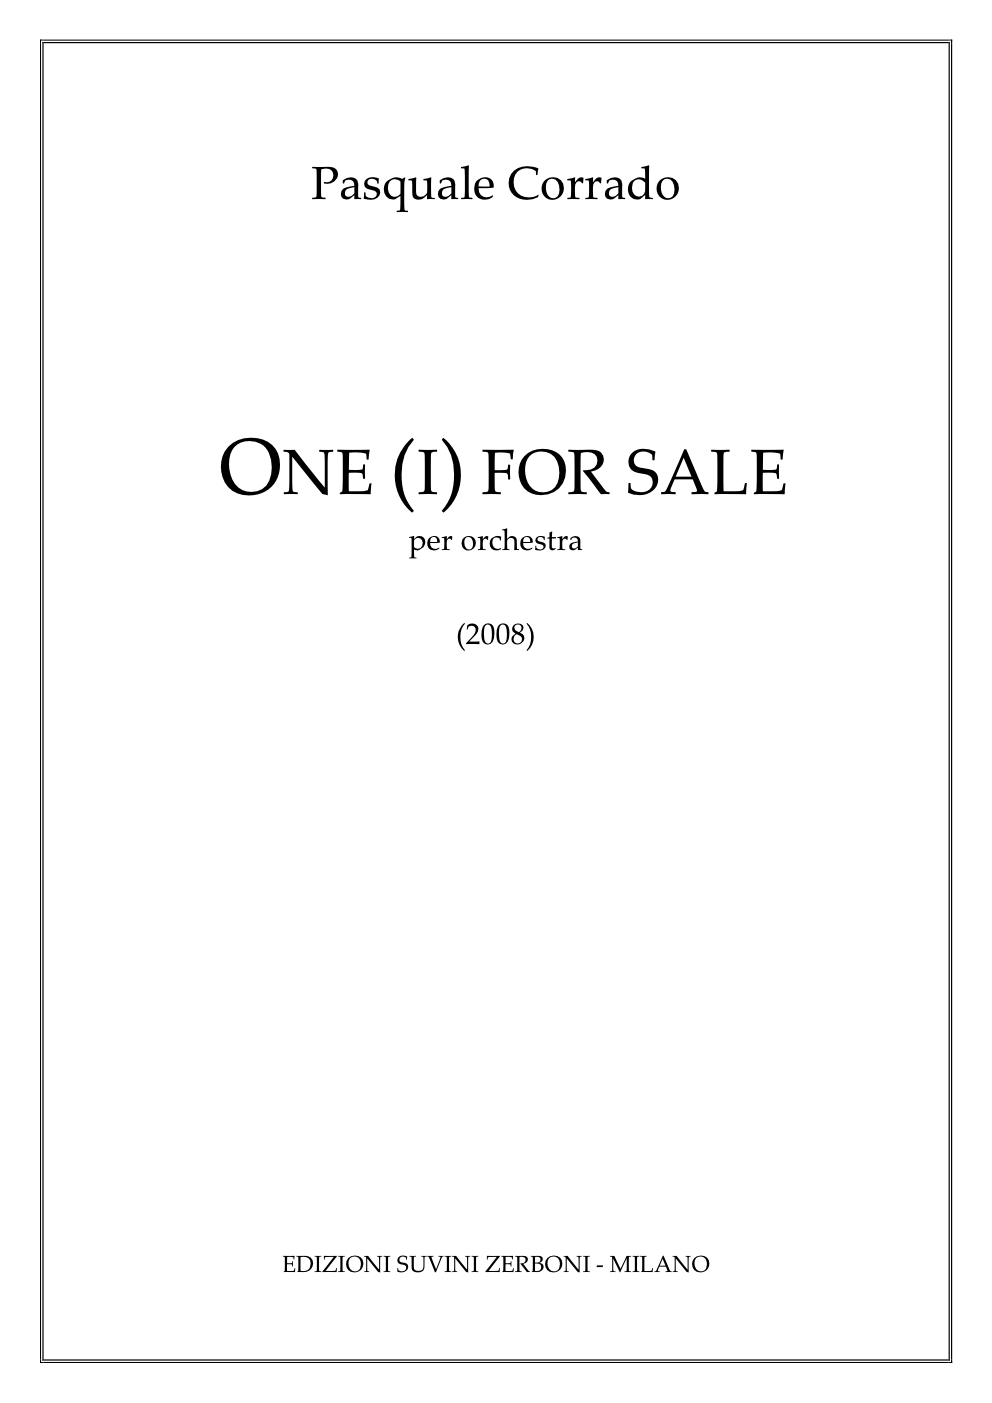 One i for Sale_Corrado 1